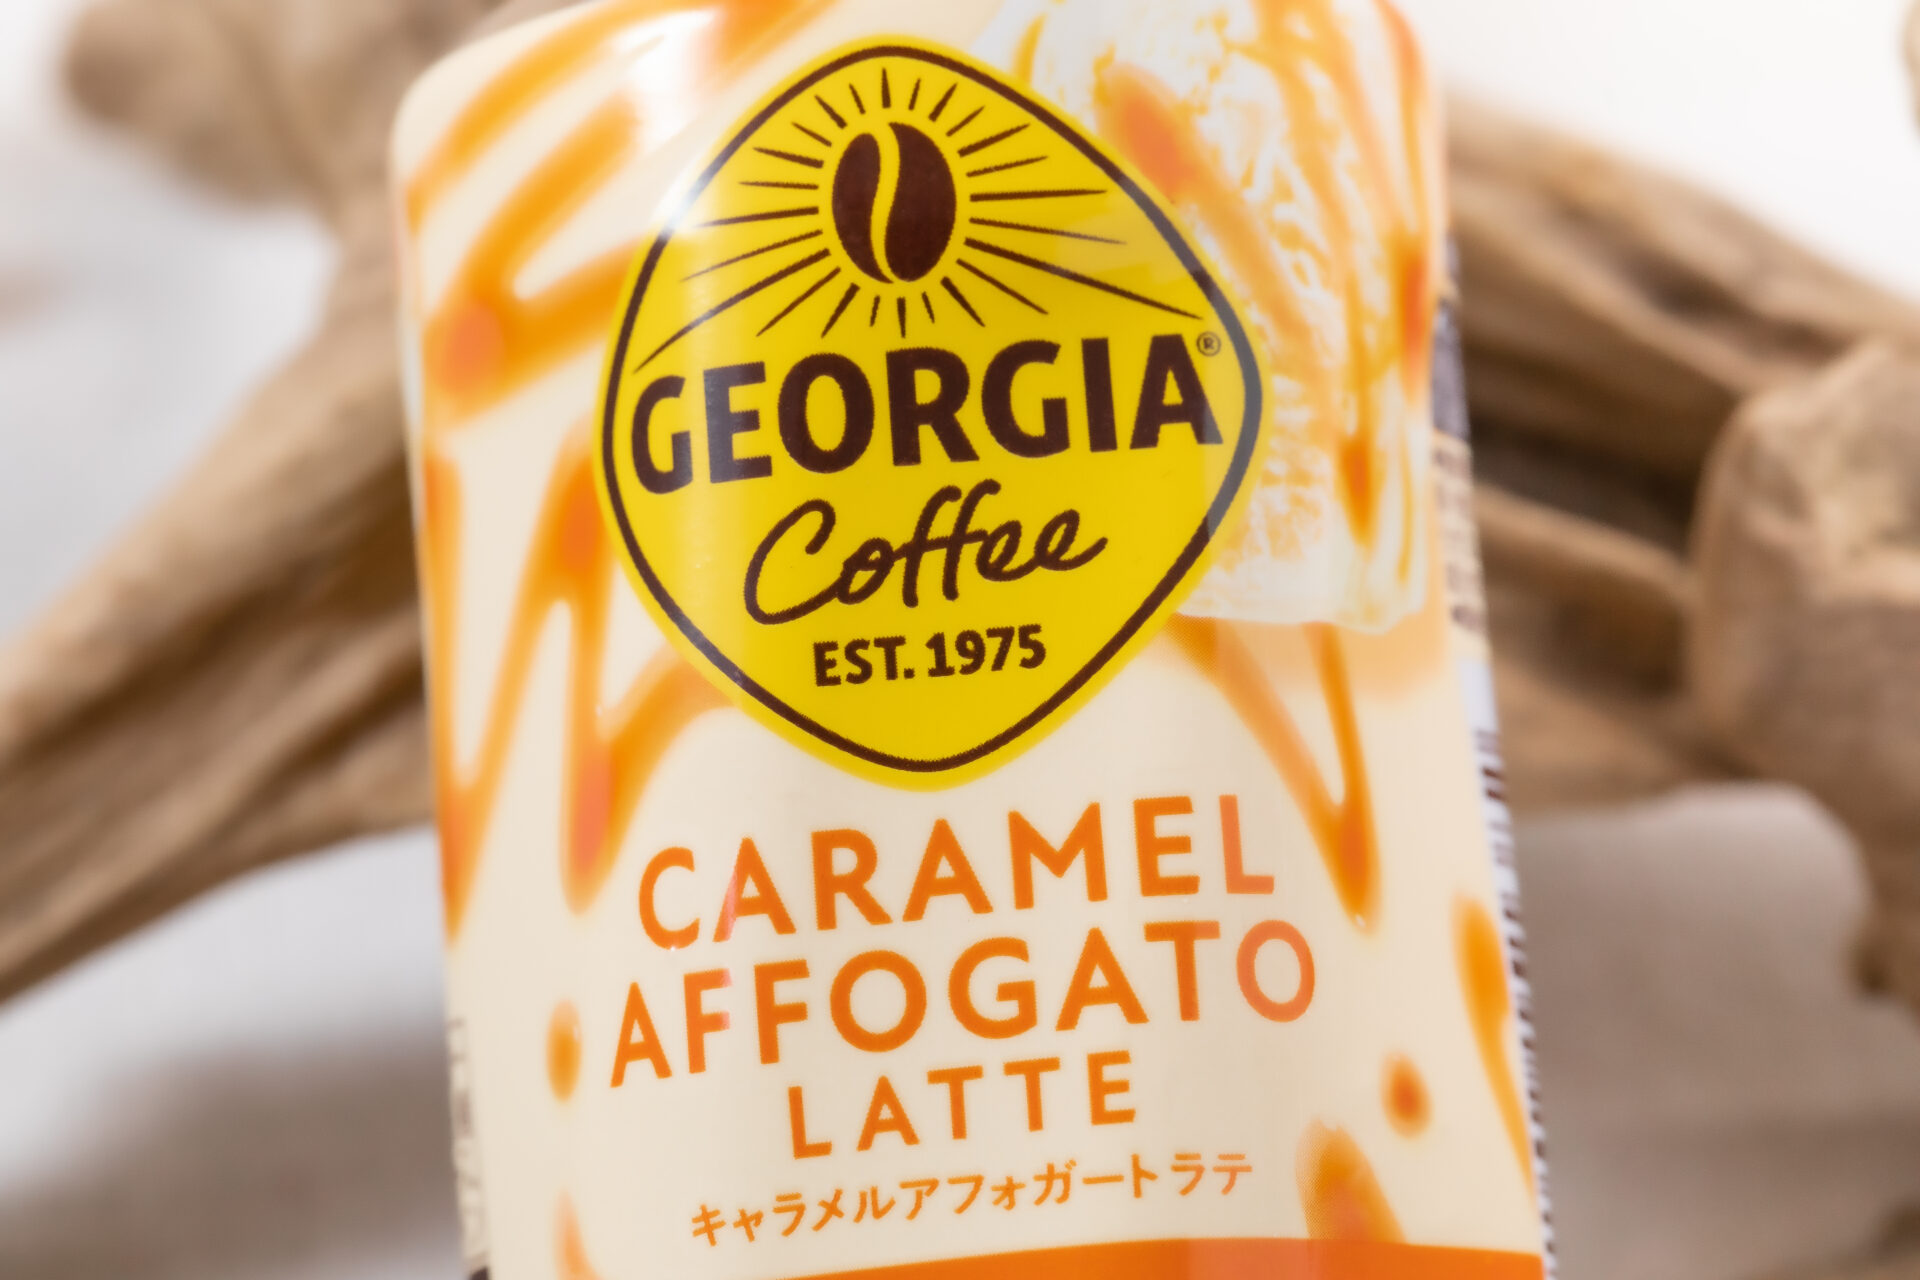 コカ・コーラ『ジョージア キャラメルアフォガート ラテ』は濃密な甘さ、バニラの深い香り、キャラメルのほろ苦さなどを感じられる、お手頃デザートラテ！